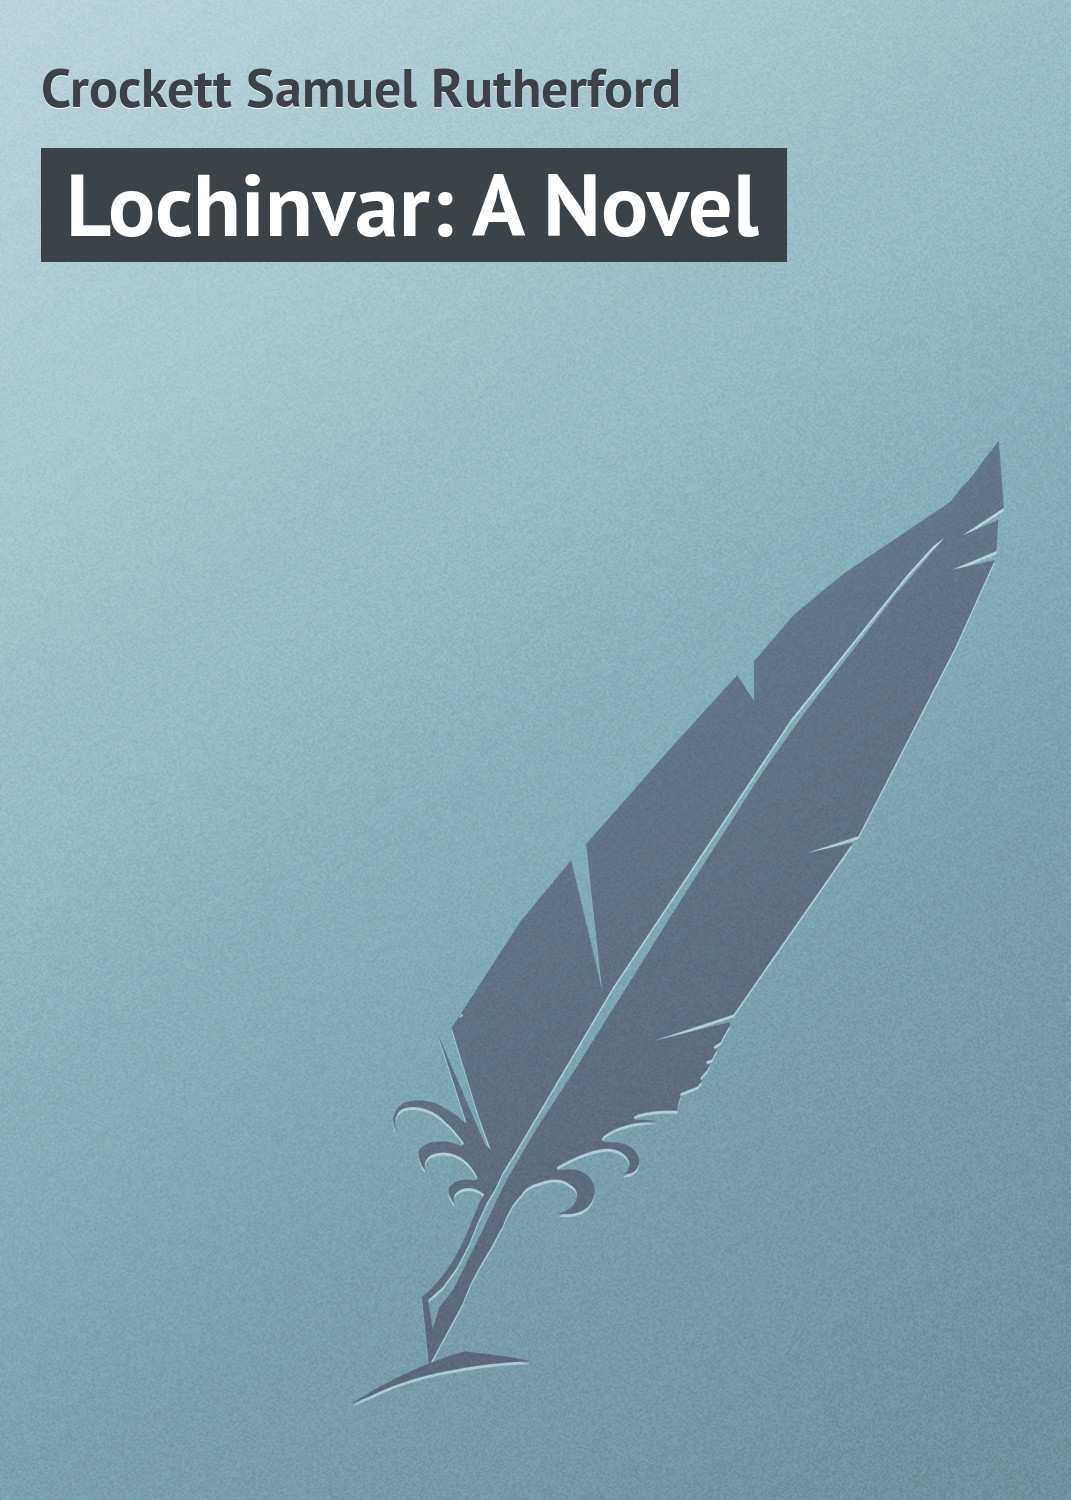 Книга Lochinvar: A Novel из серии , созданная Samuel Crockett, может относится к жанру Зарубежная классика. Стоимость электронной книги Lochinvar: A Novel с идентификатором 23164075 составляет 5.99 руб.